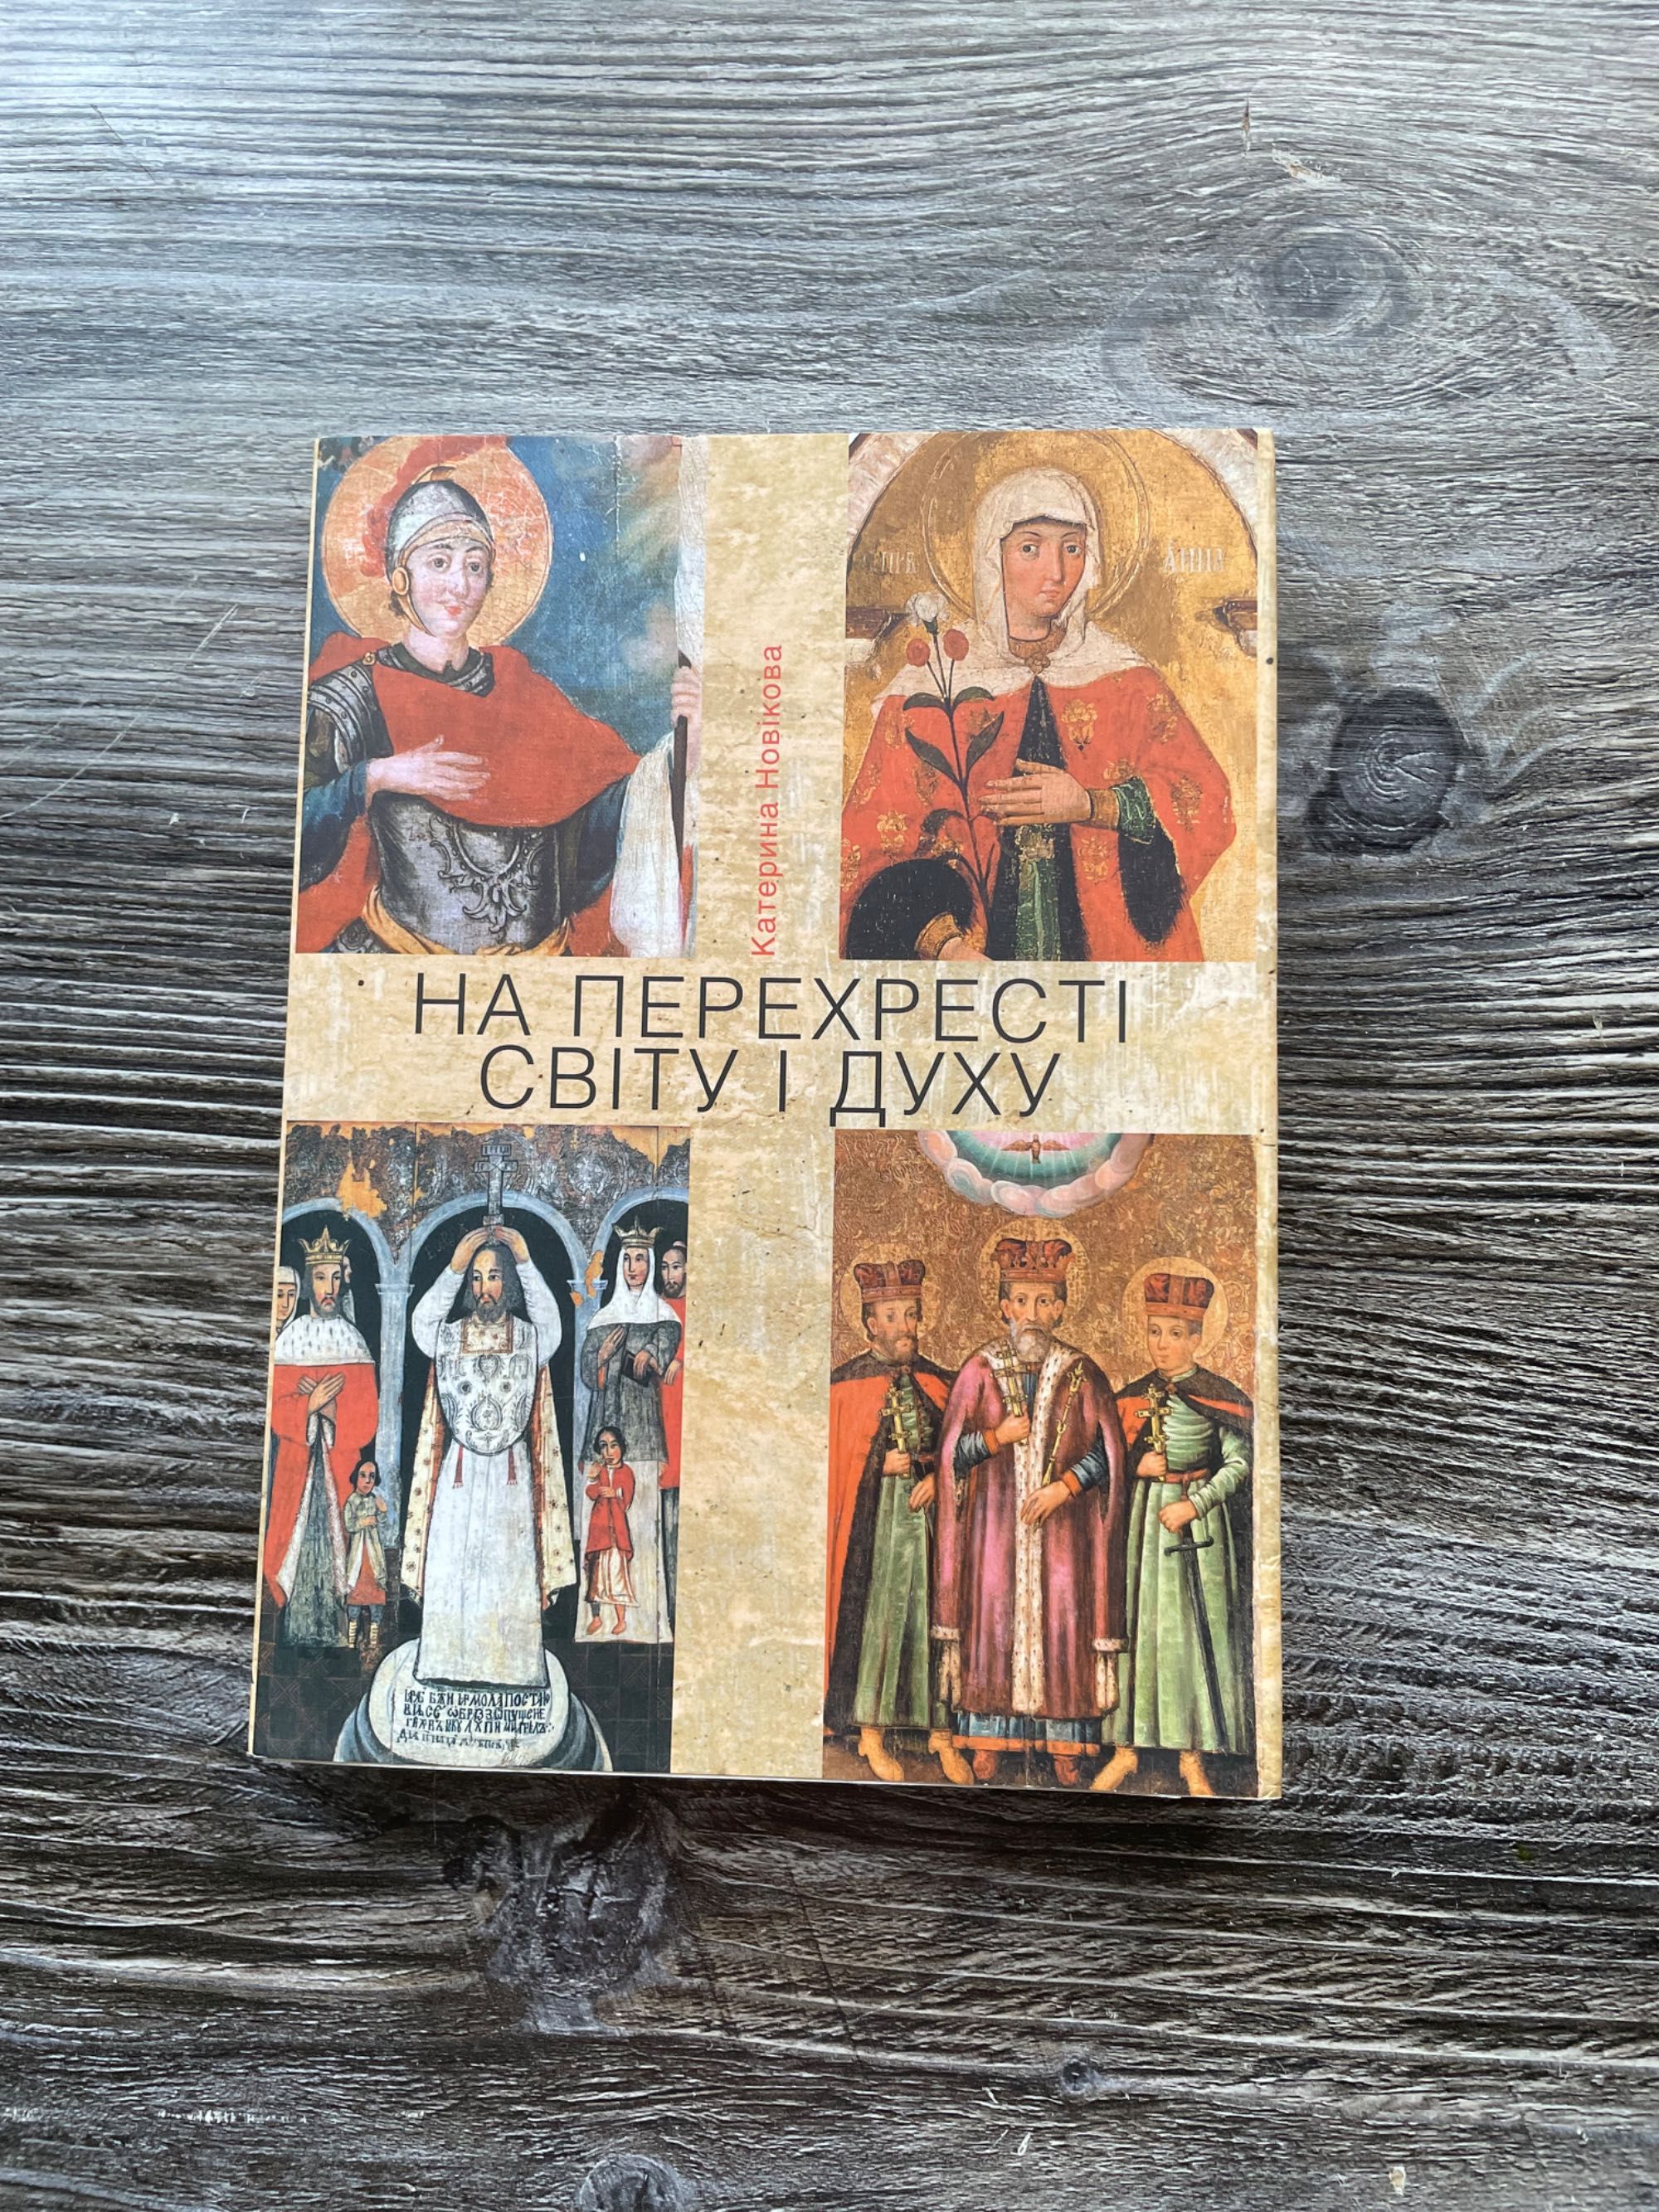 Православная литература, книги разные. Цена в описании